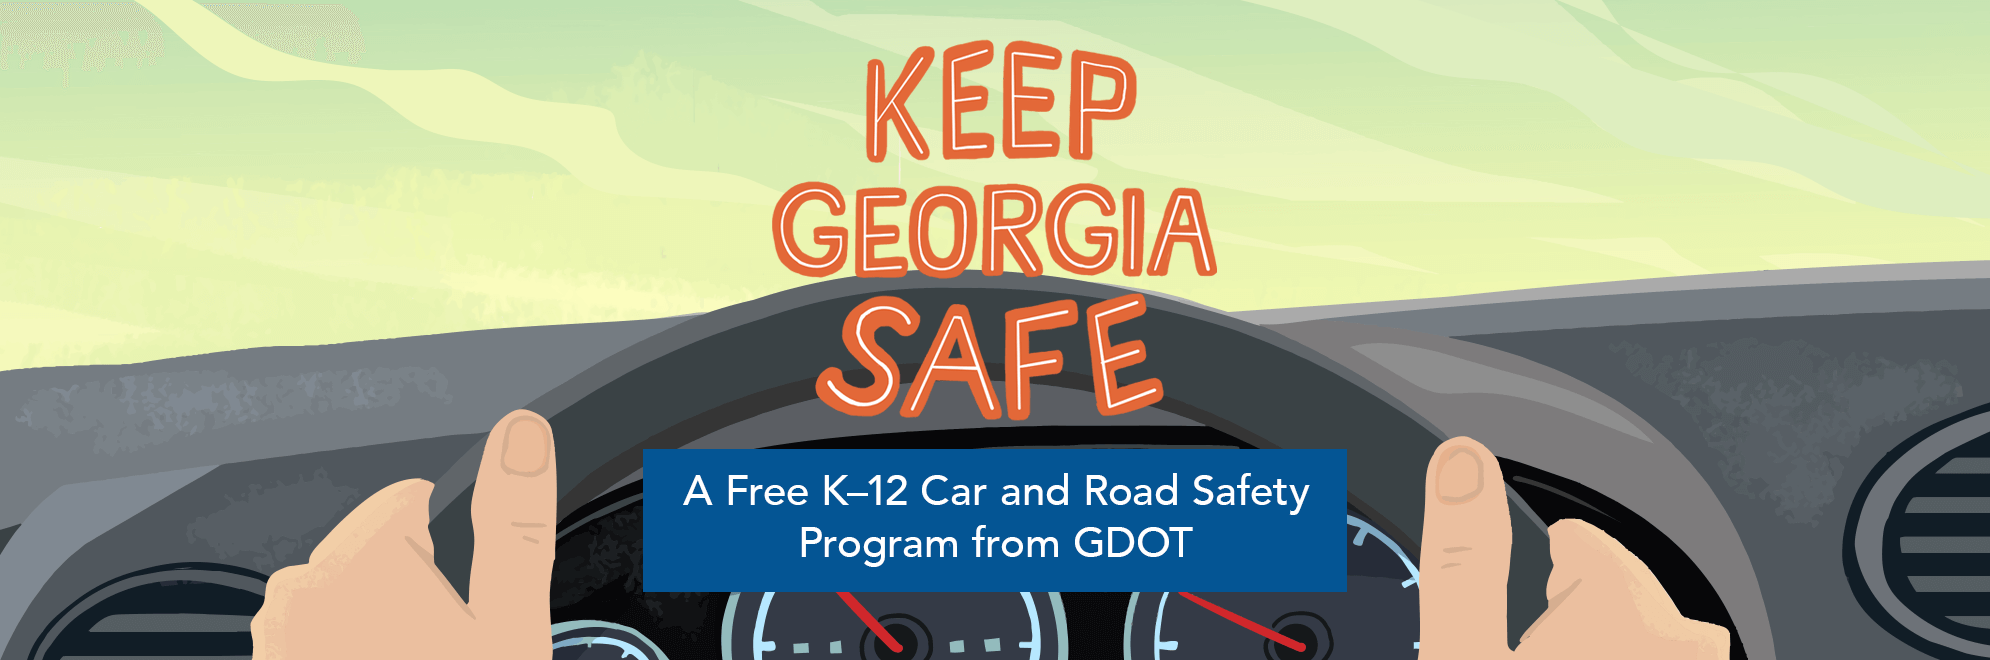 Georgia Road Safety